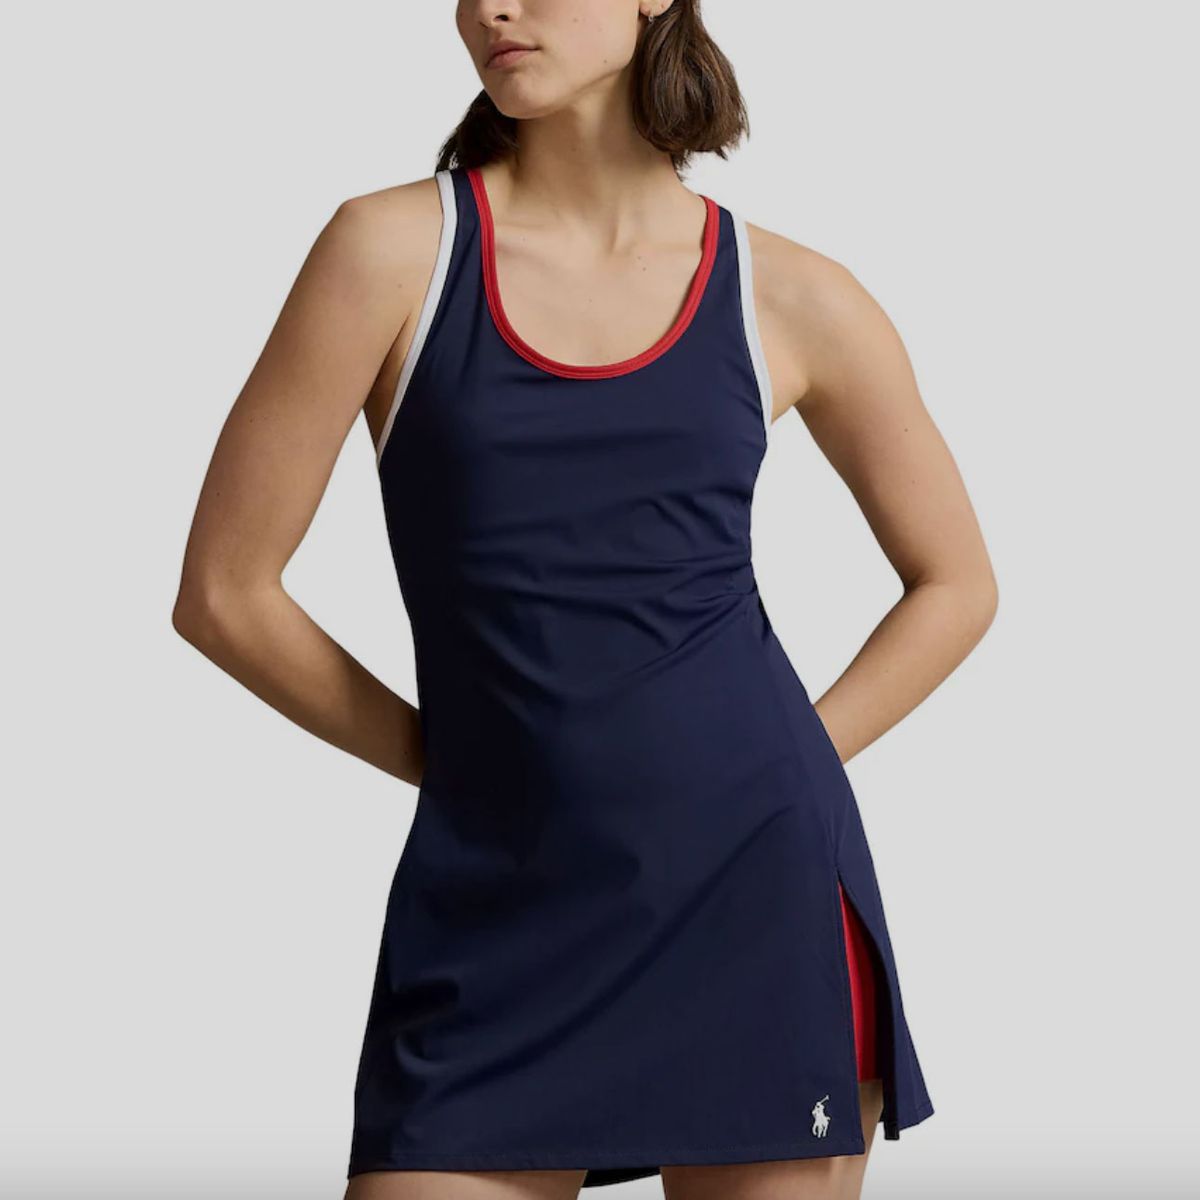 Polo Ralph Lauren Team USA Performance Sleeveless Tank Dress